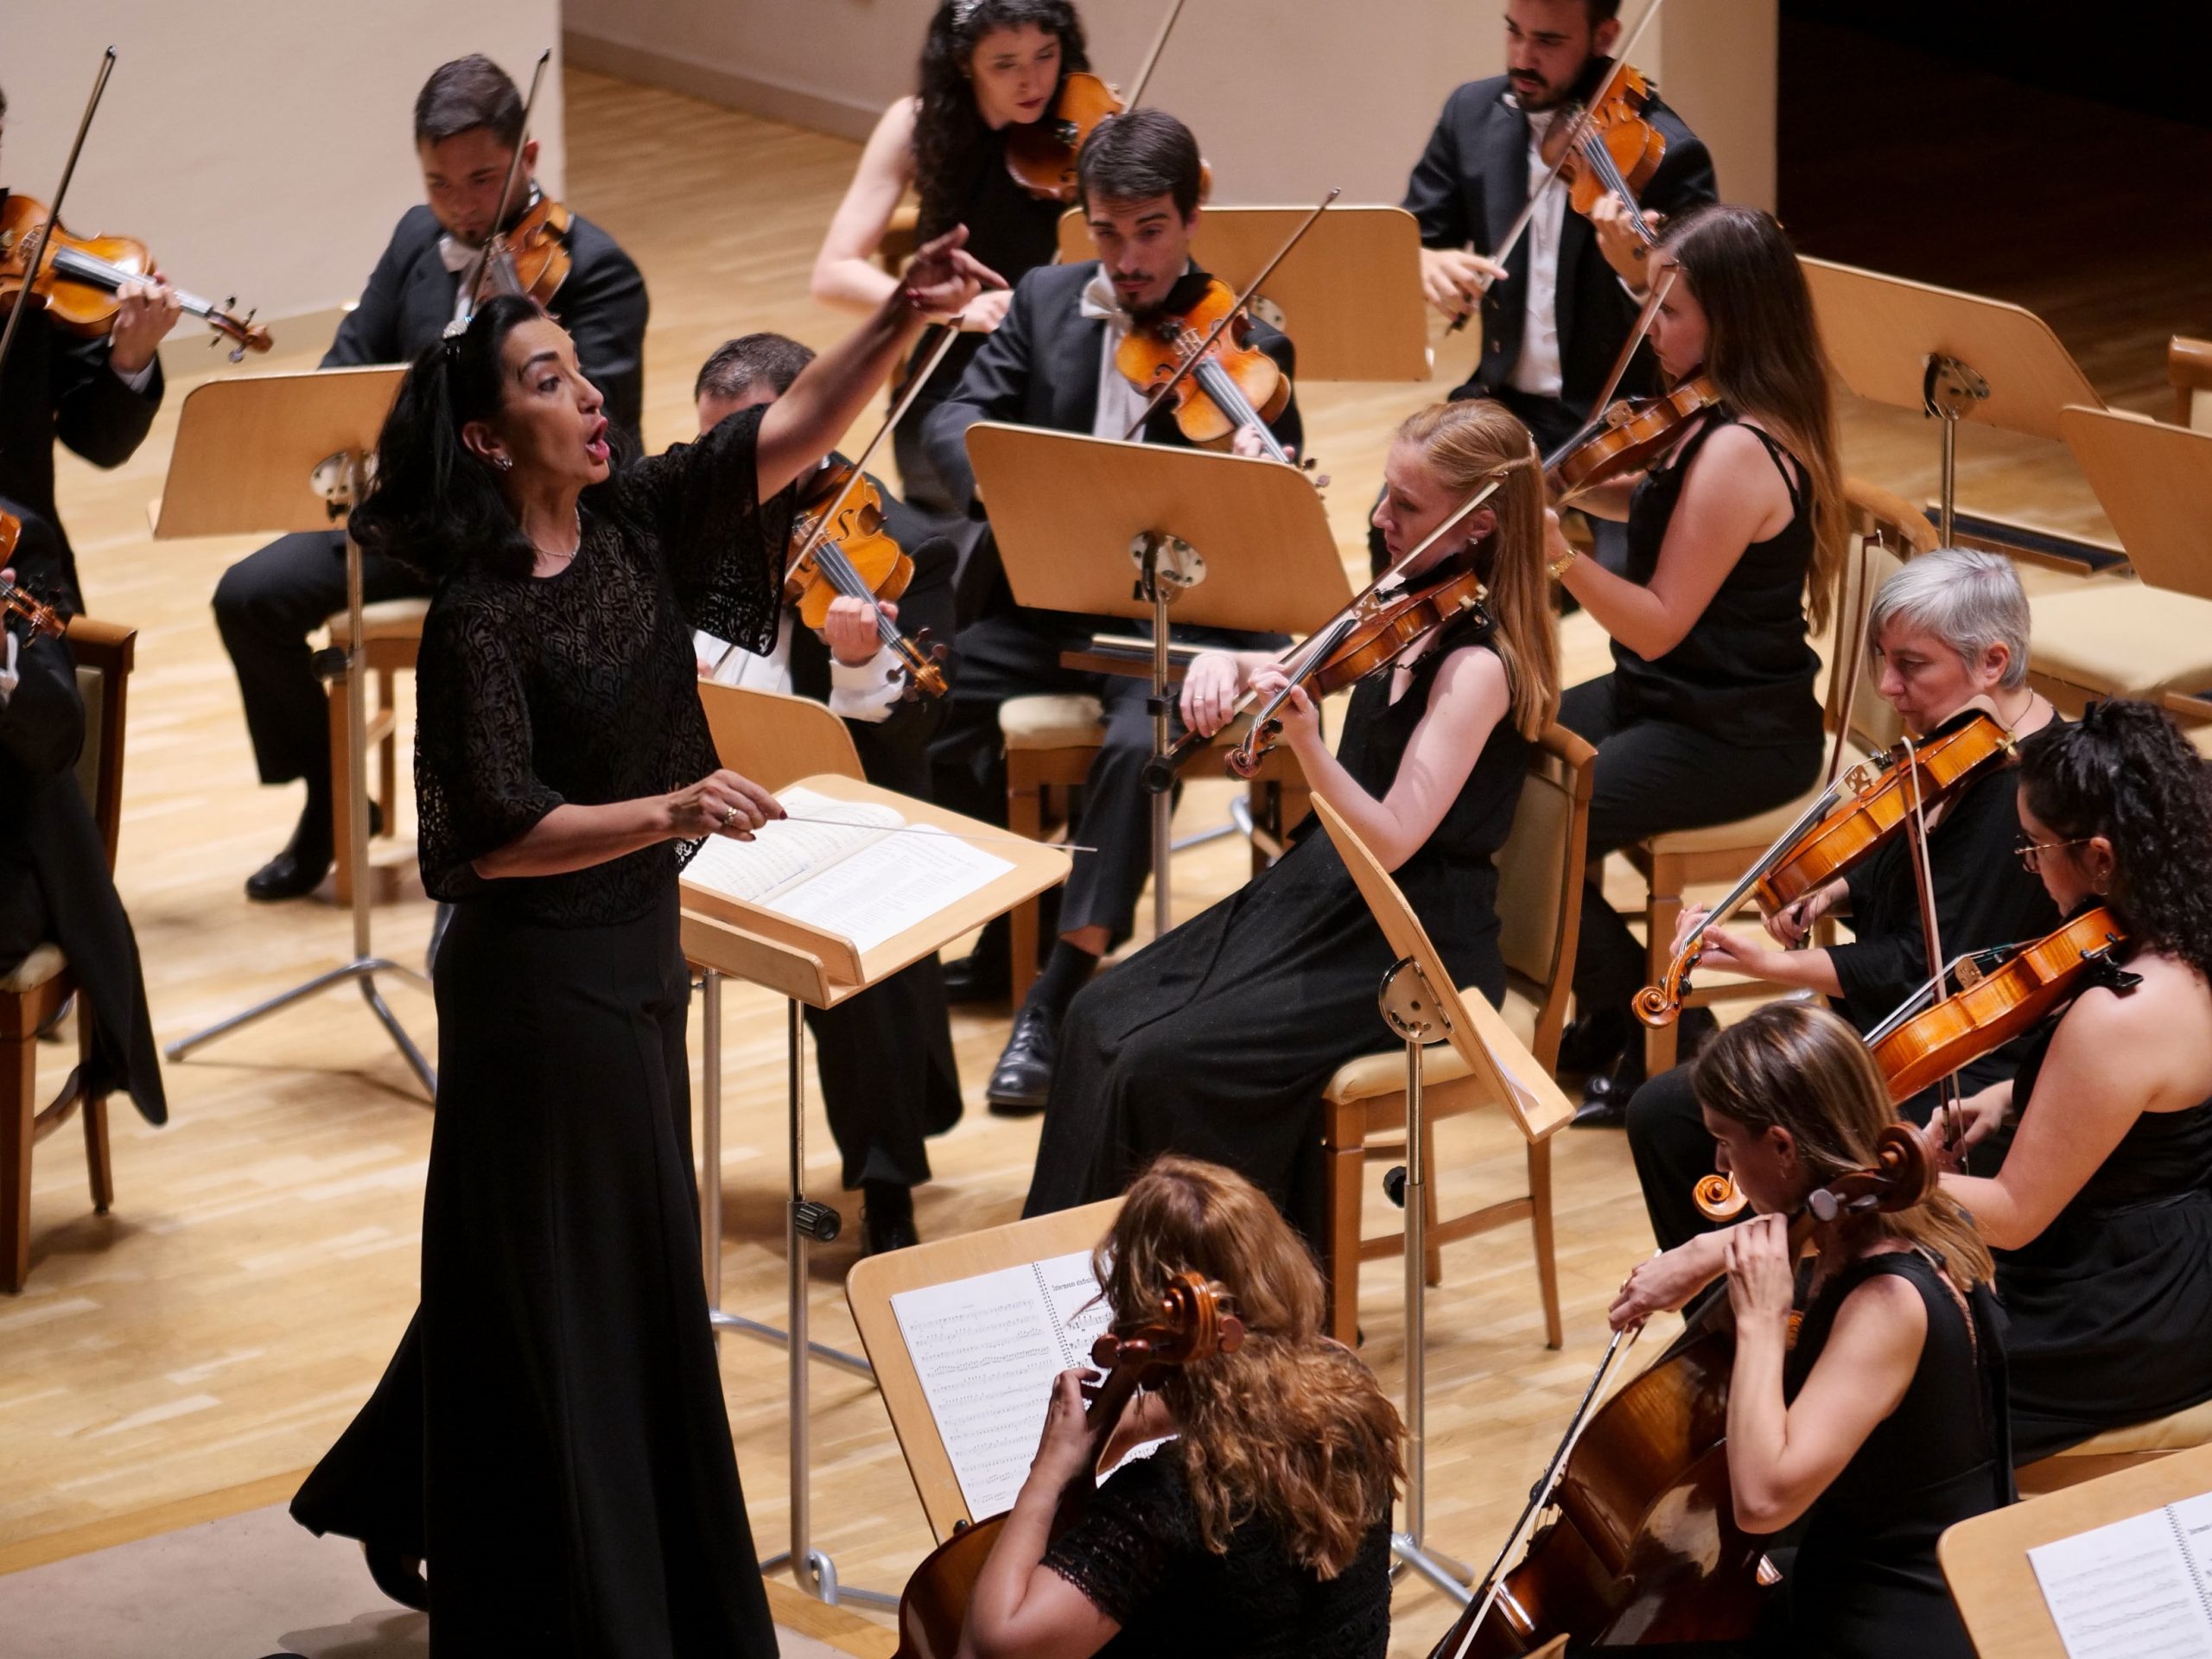 Silvia Sanz y la Orquesta Metropolitana presentan su segundo concierto del Ciclo Batuta en el Auditorio Nacional, bajo el título ‘Música en la corte’